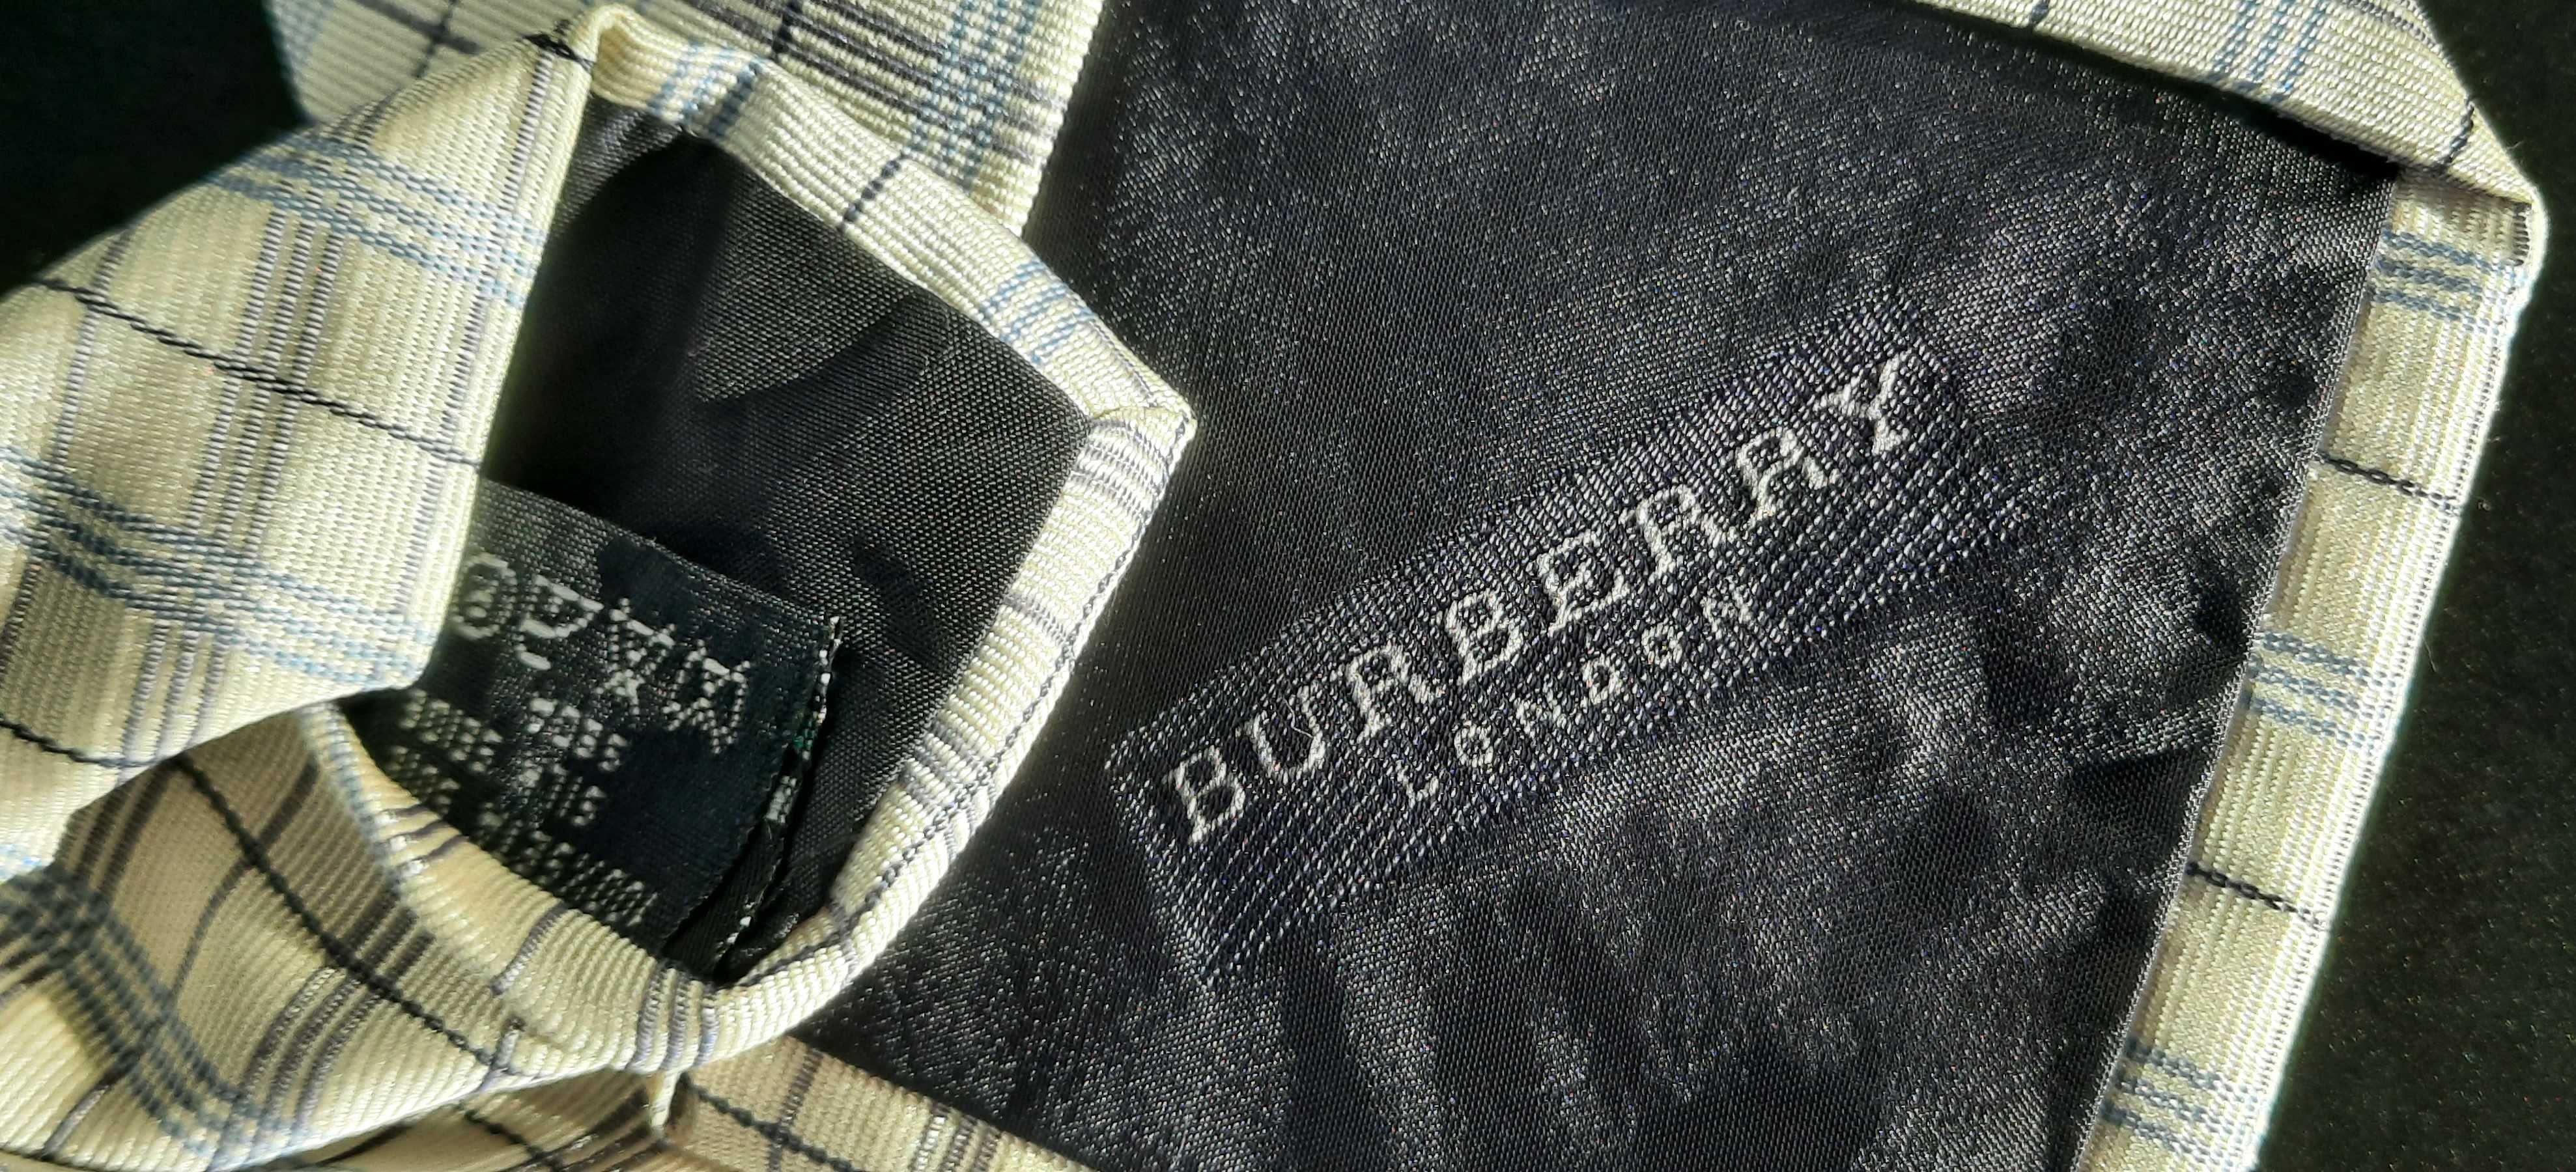 vand două cravate din mătase, una este marca Burberry.